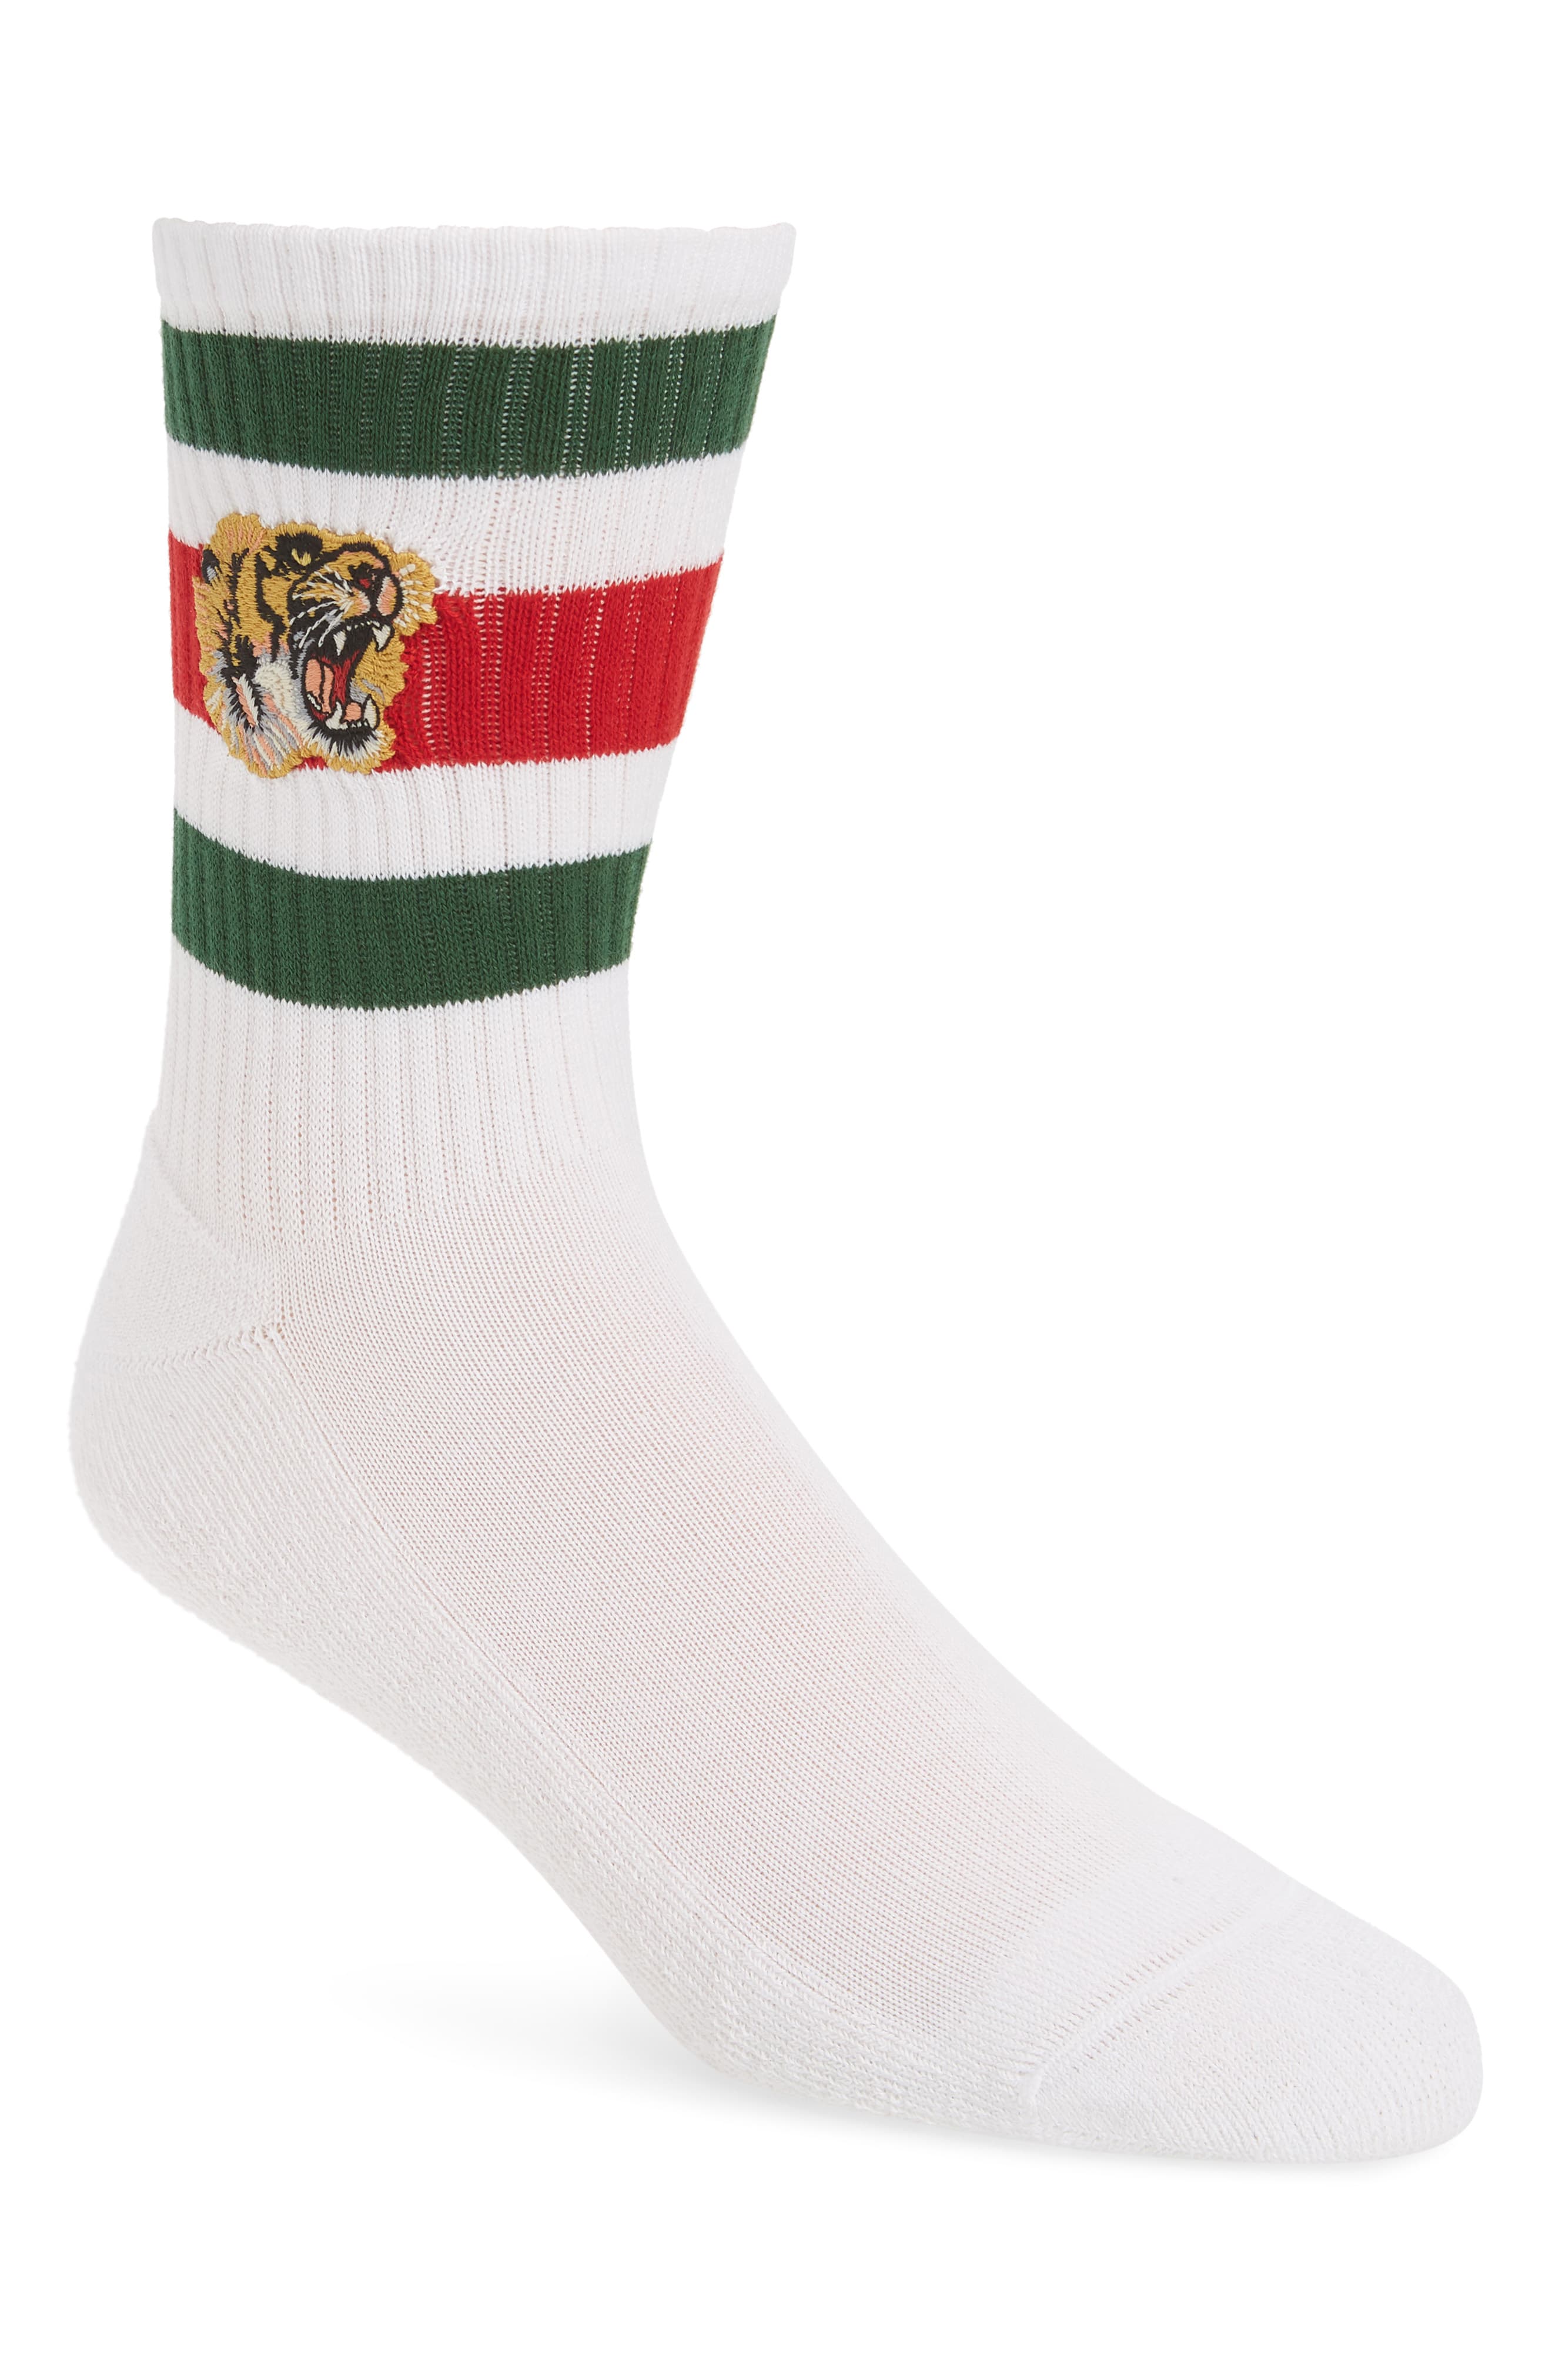 Men's Gucci Tiger Patch Socks | The Fashionisto